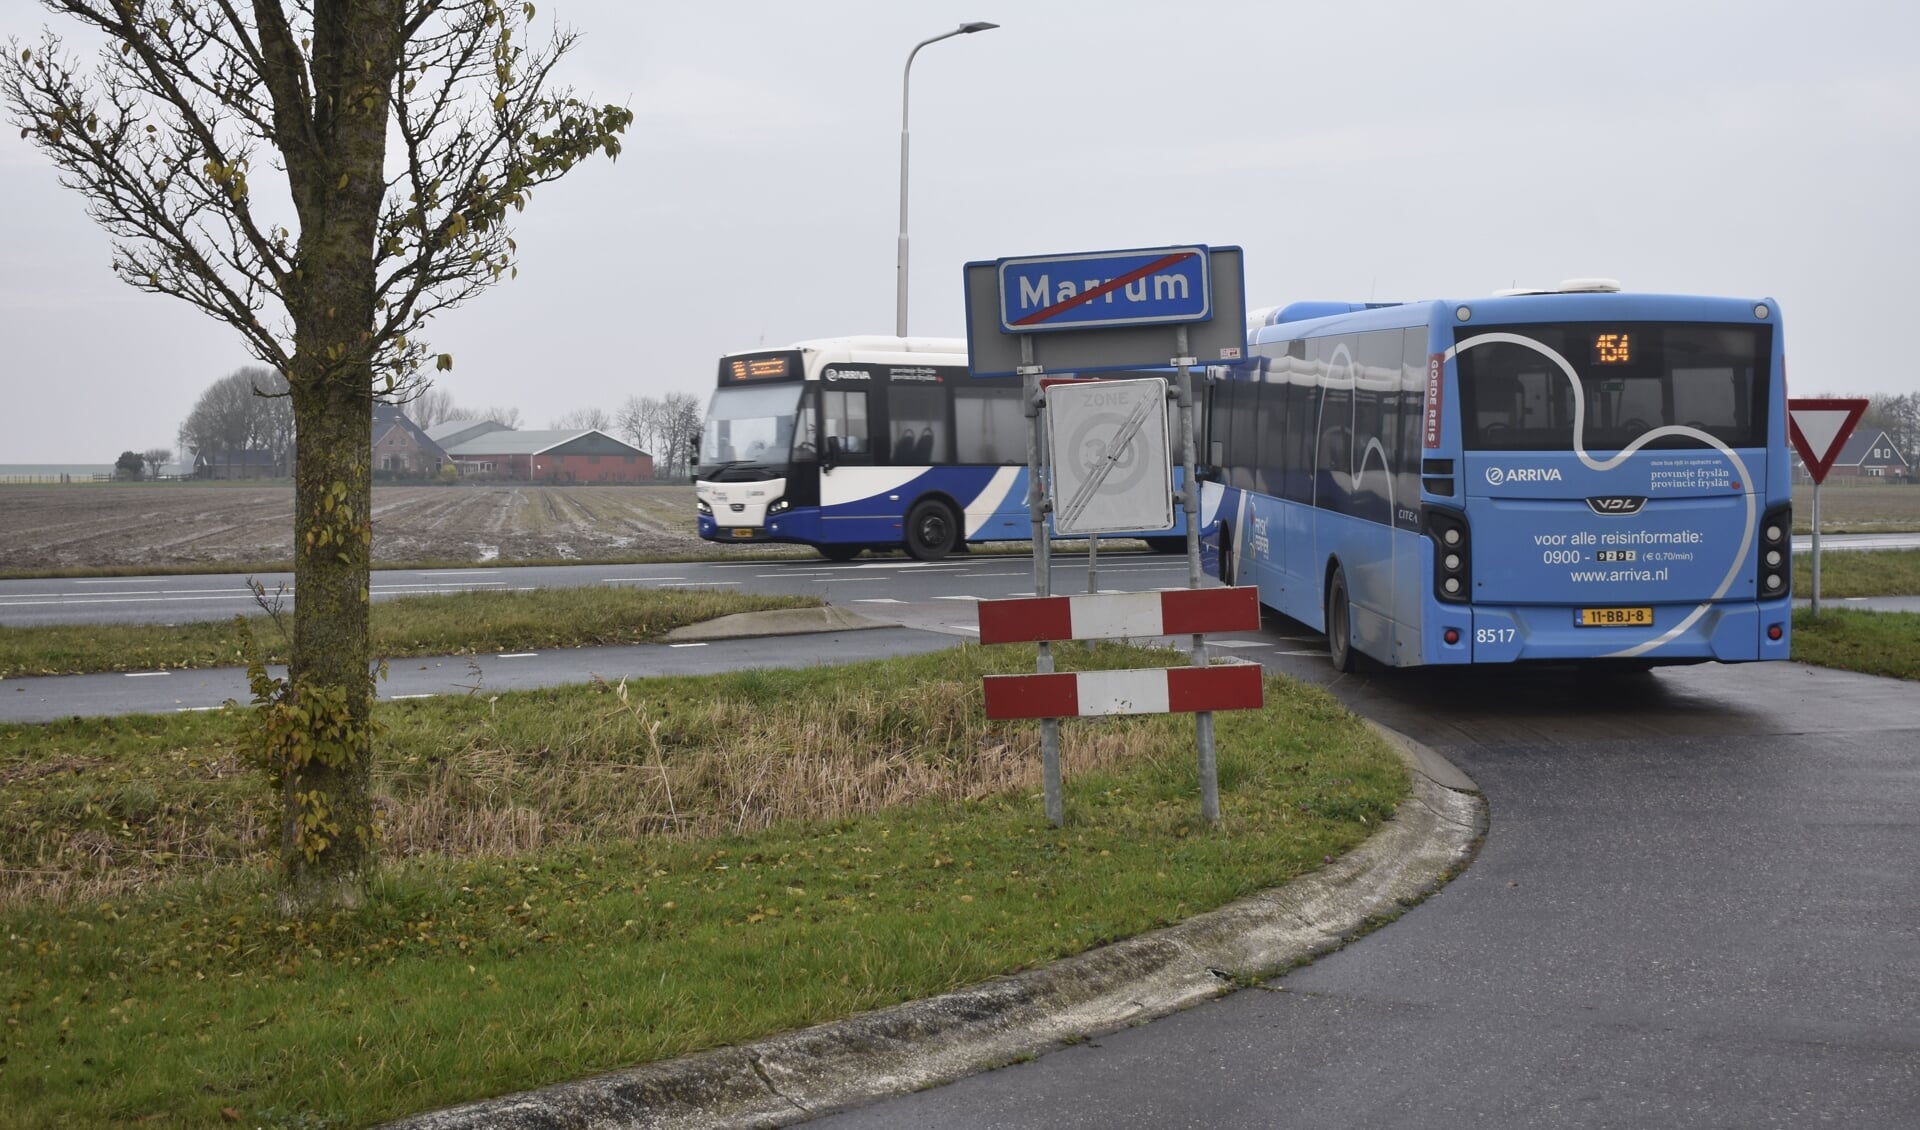 Twee bussen van lijn 154 bij Marrum. Ze stoppen alleen nog bij de provinciale weg.